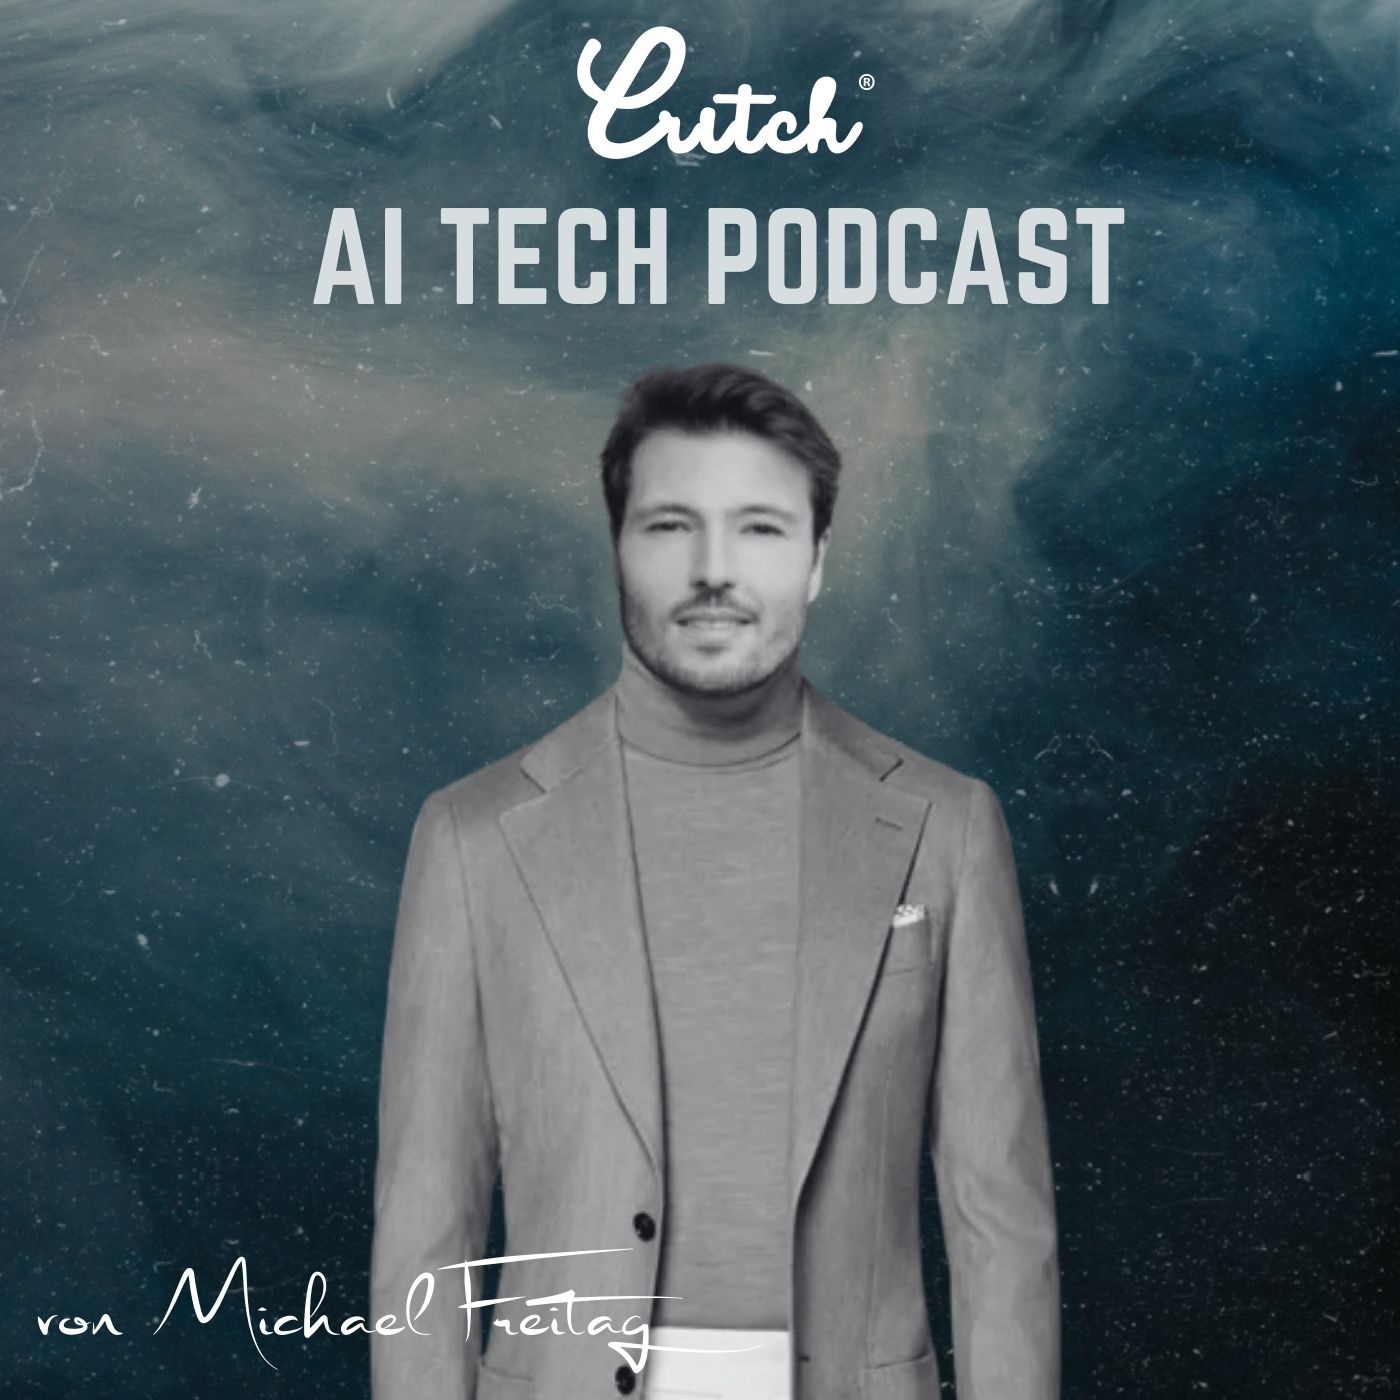 CRITCH® AI Tech Podcast von Michael Freitag - Künstliche Intelligenz, Wirtschaft und Technologie